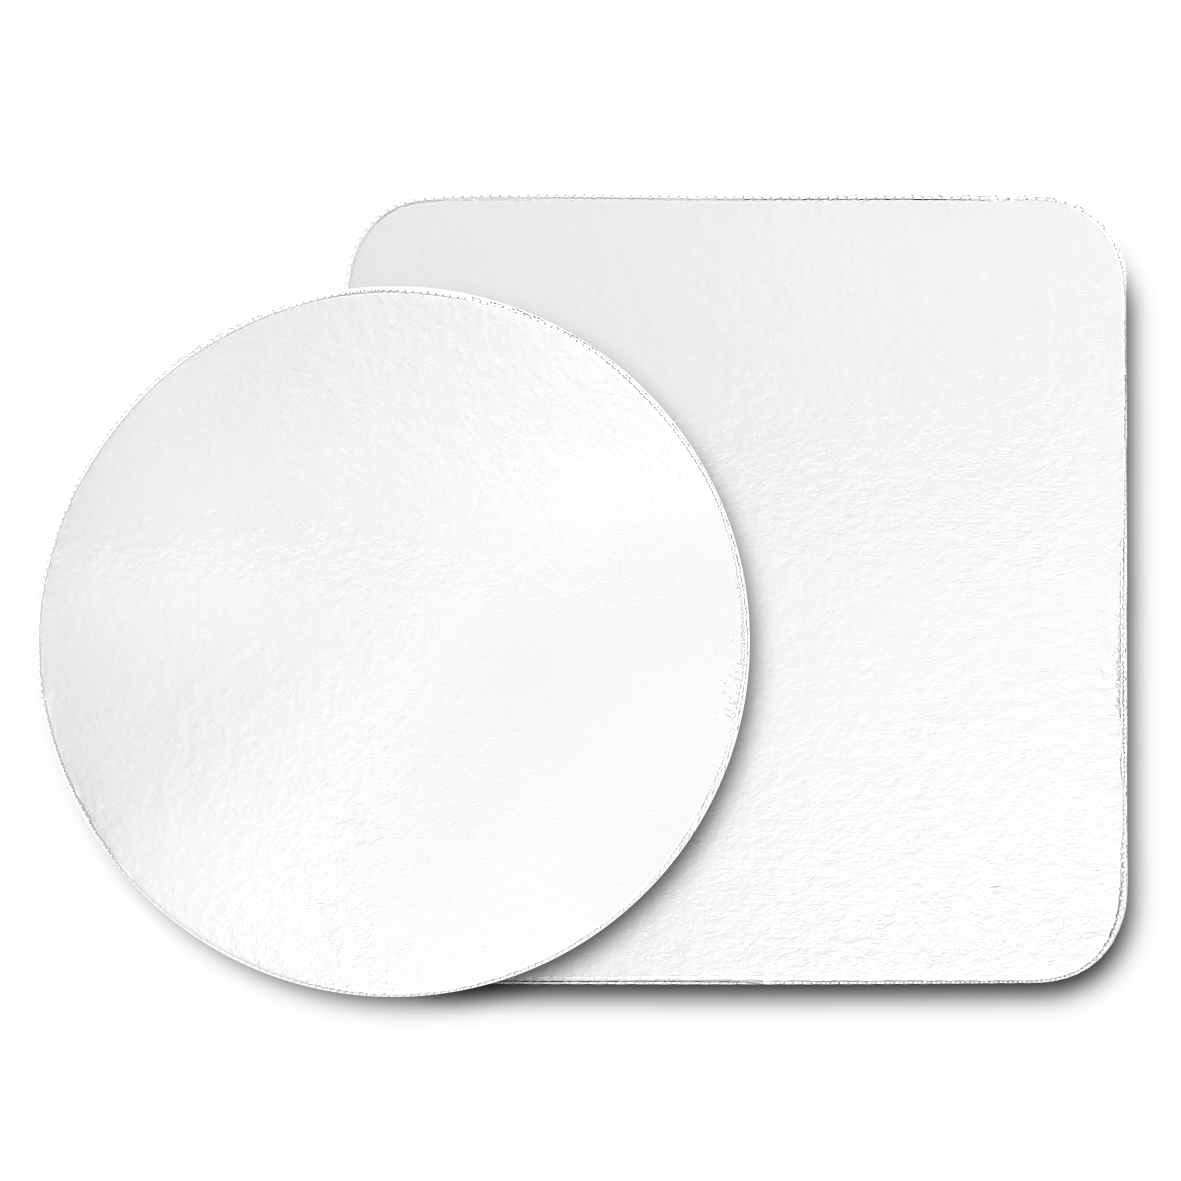 Obrázek k výrobku 21045 - Podnos biely hrubý 1 cm kruh (30 cm) s krajkou